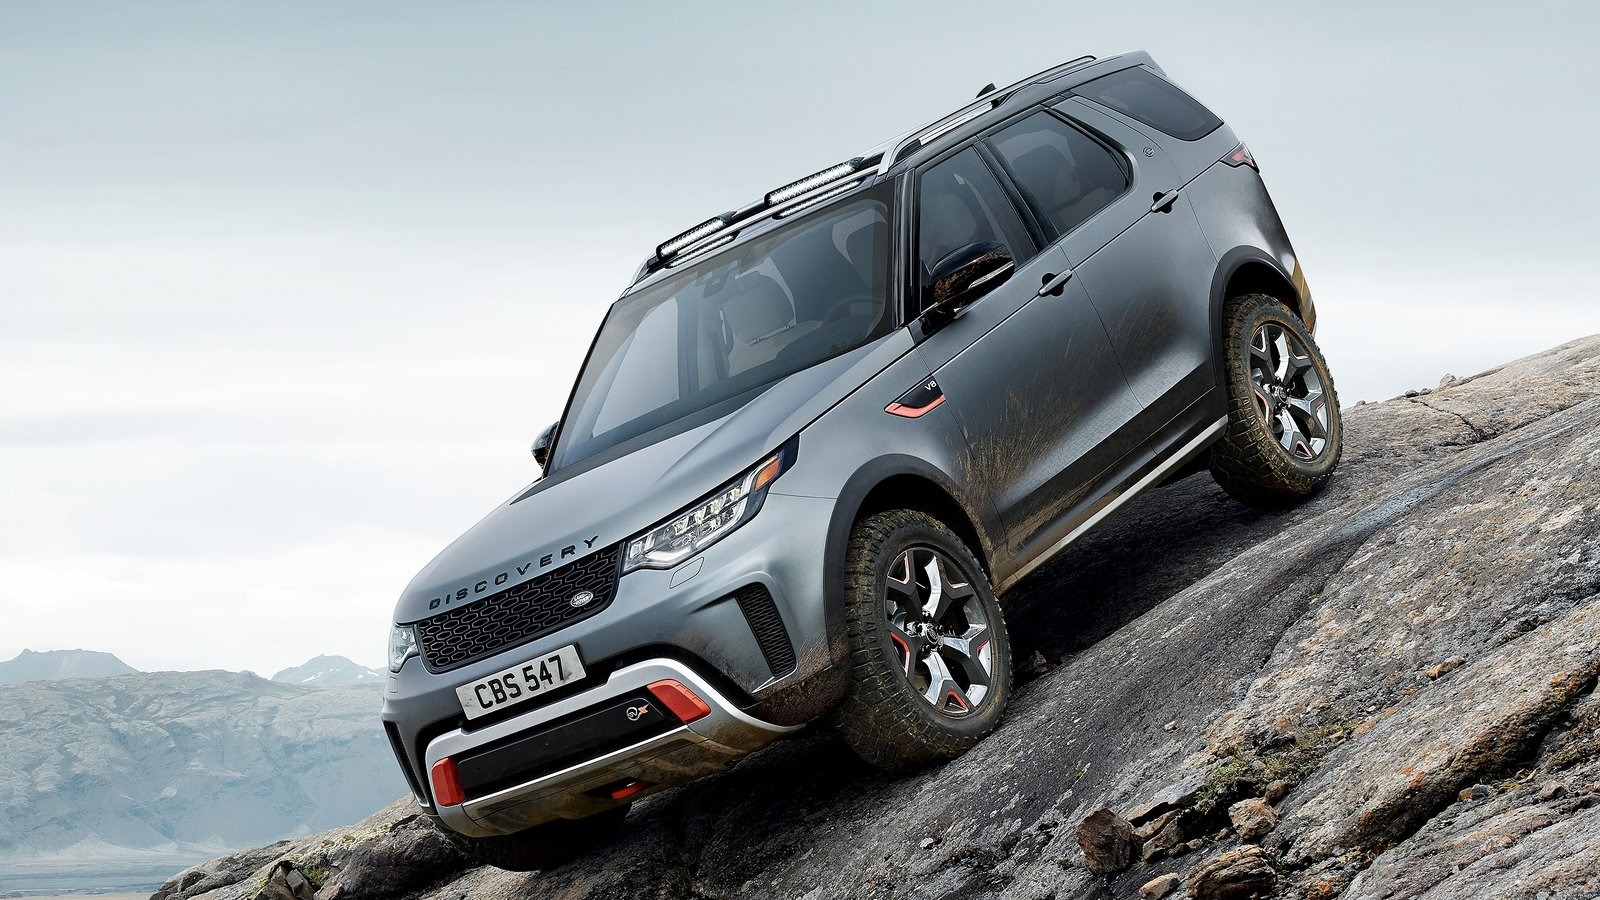 Land Rover og tyske merker dyrest å vedlikeholde ifølge Consumer Reports